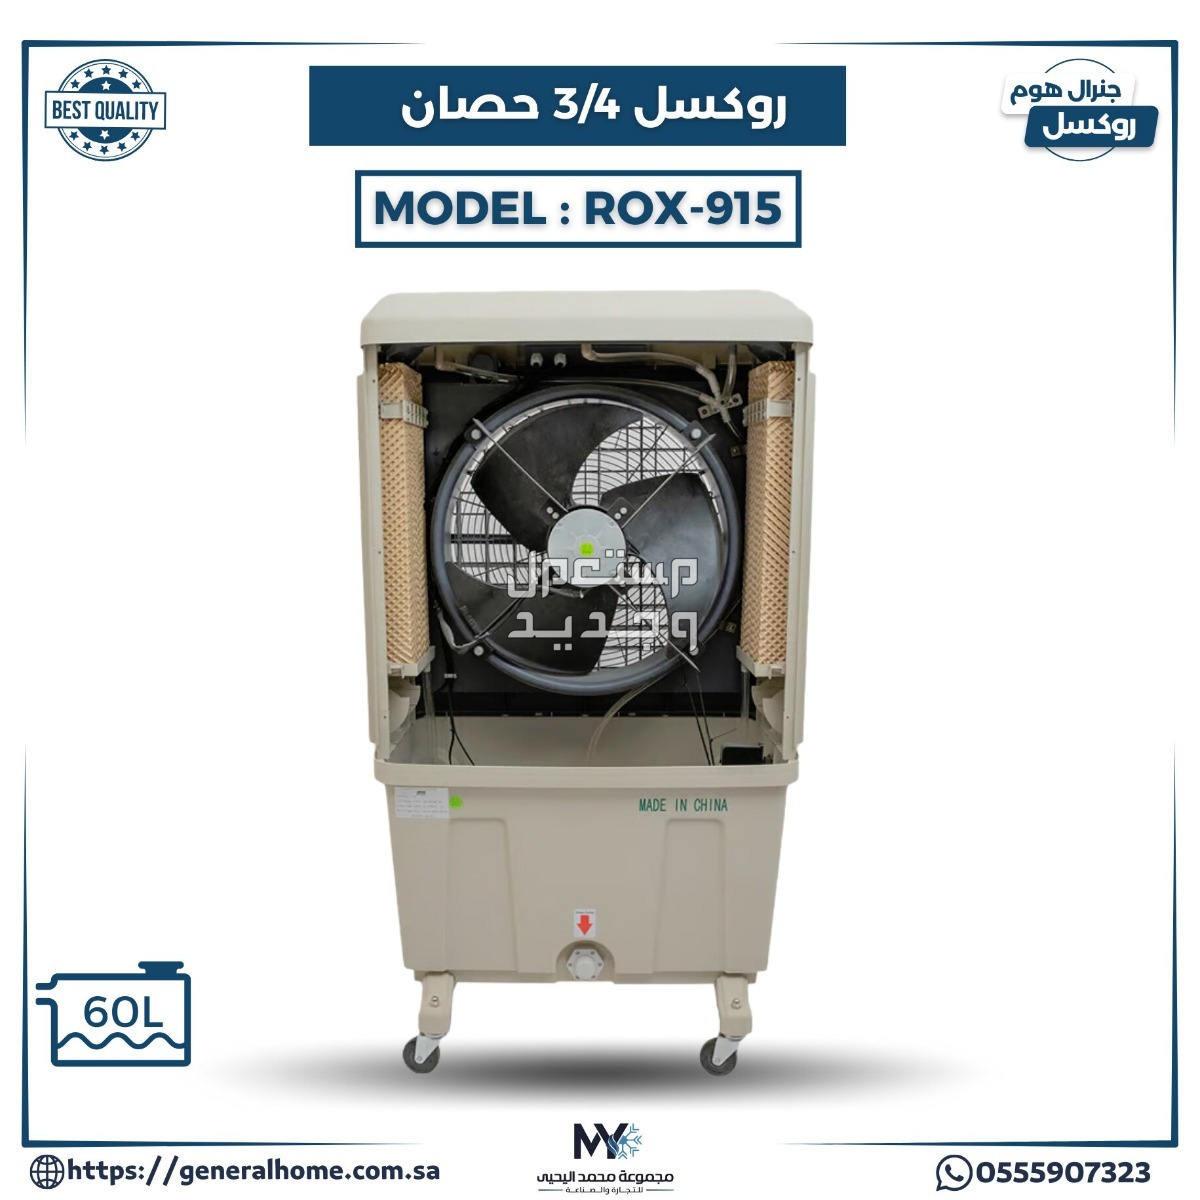 عروض اليحيى للمكيفات بالأنواع والمواصفات والصور والأسعار في الإمارات العربية المتحدة مكيف روكسل 3/4 حصان موديل ROX-915